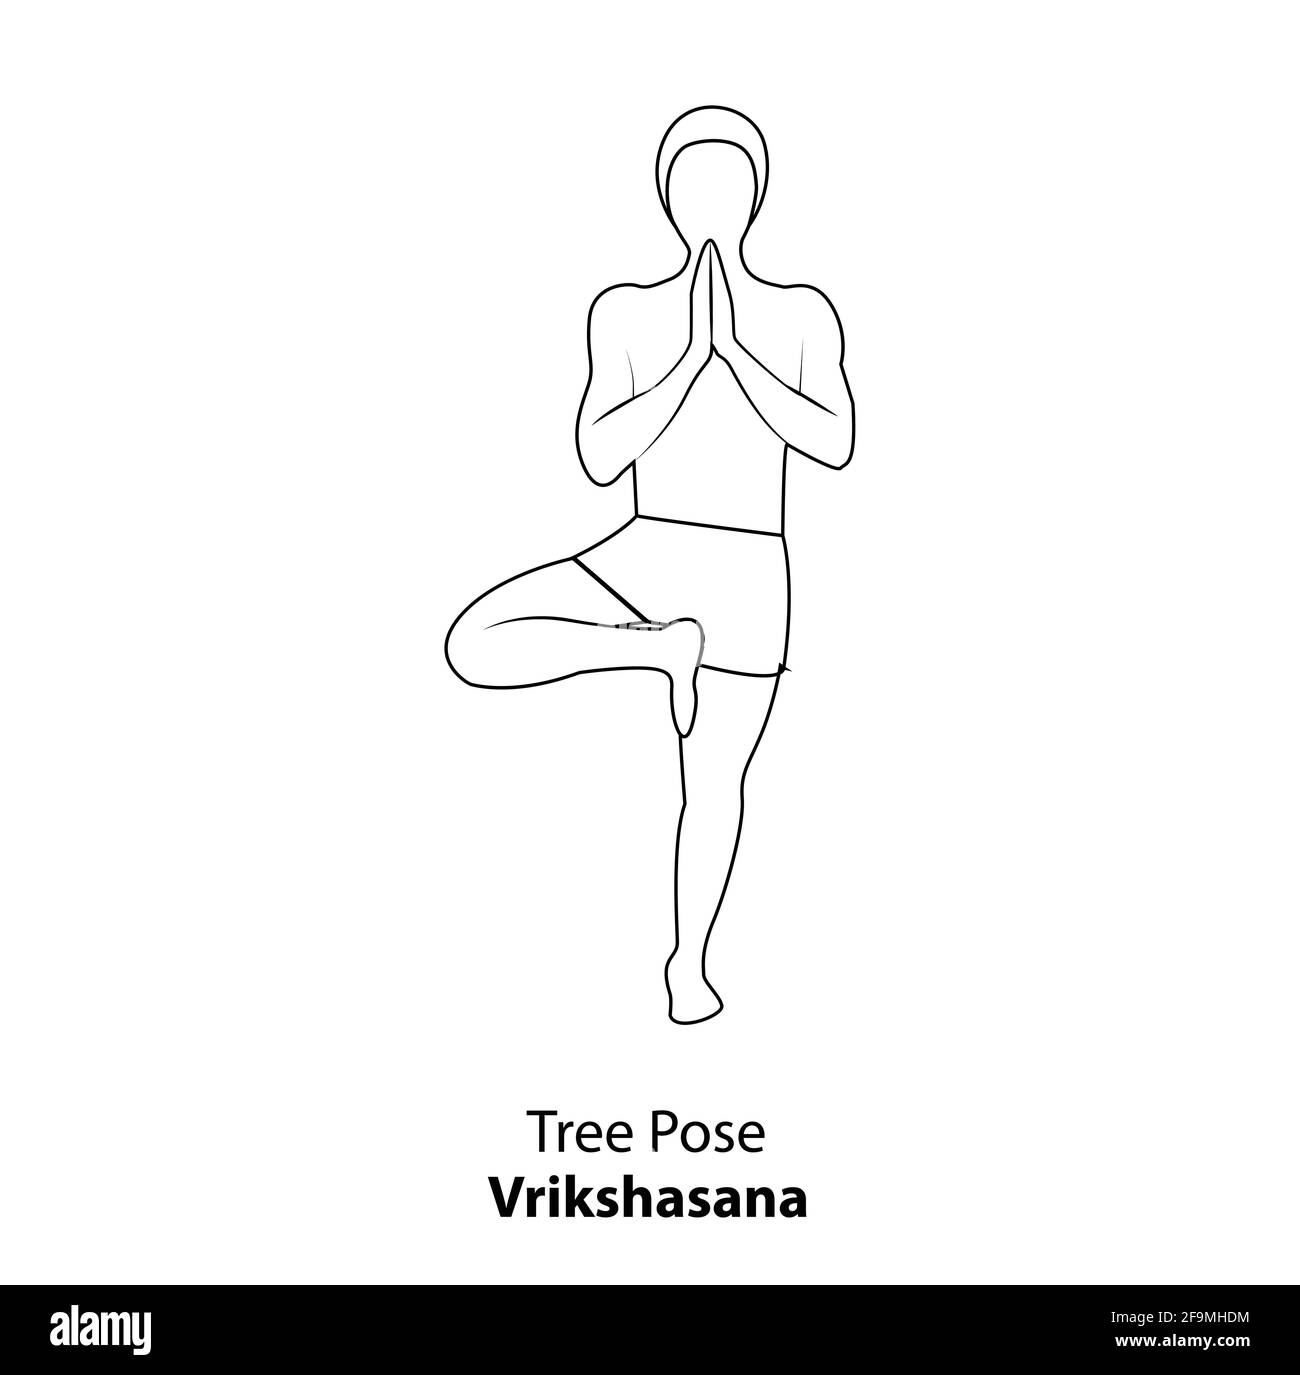 Homme pratiquant le yoga pose isolé contour Illustration. Homme debout dans la pose d'arbre ou la pose vrikshasana, icône de ligne d'Asana de Yoga Illustration de Vecteur